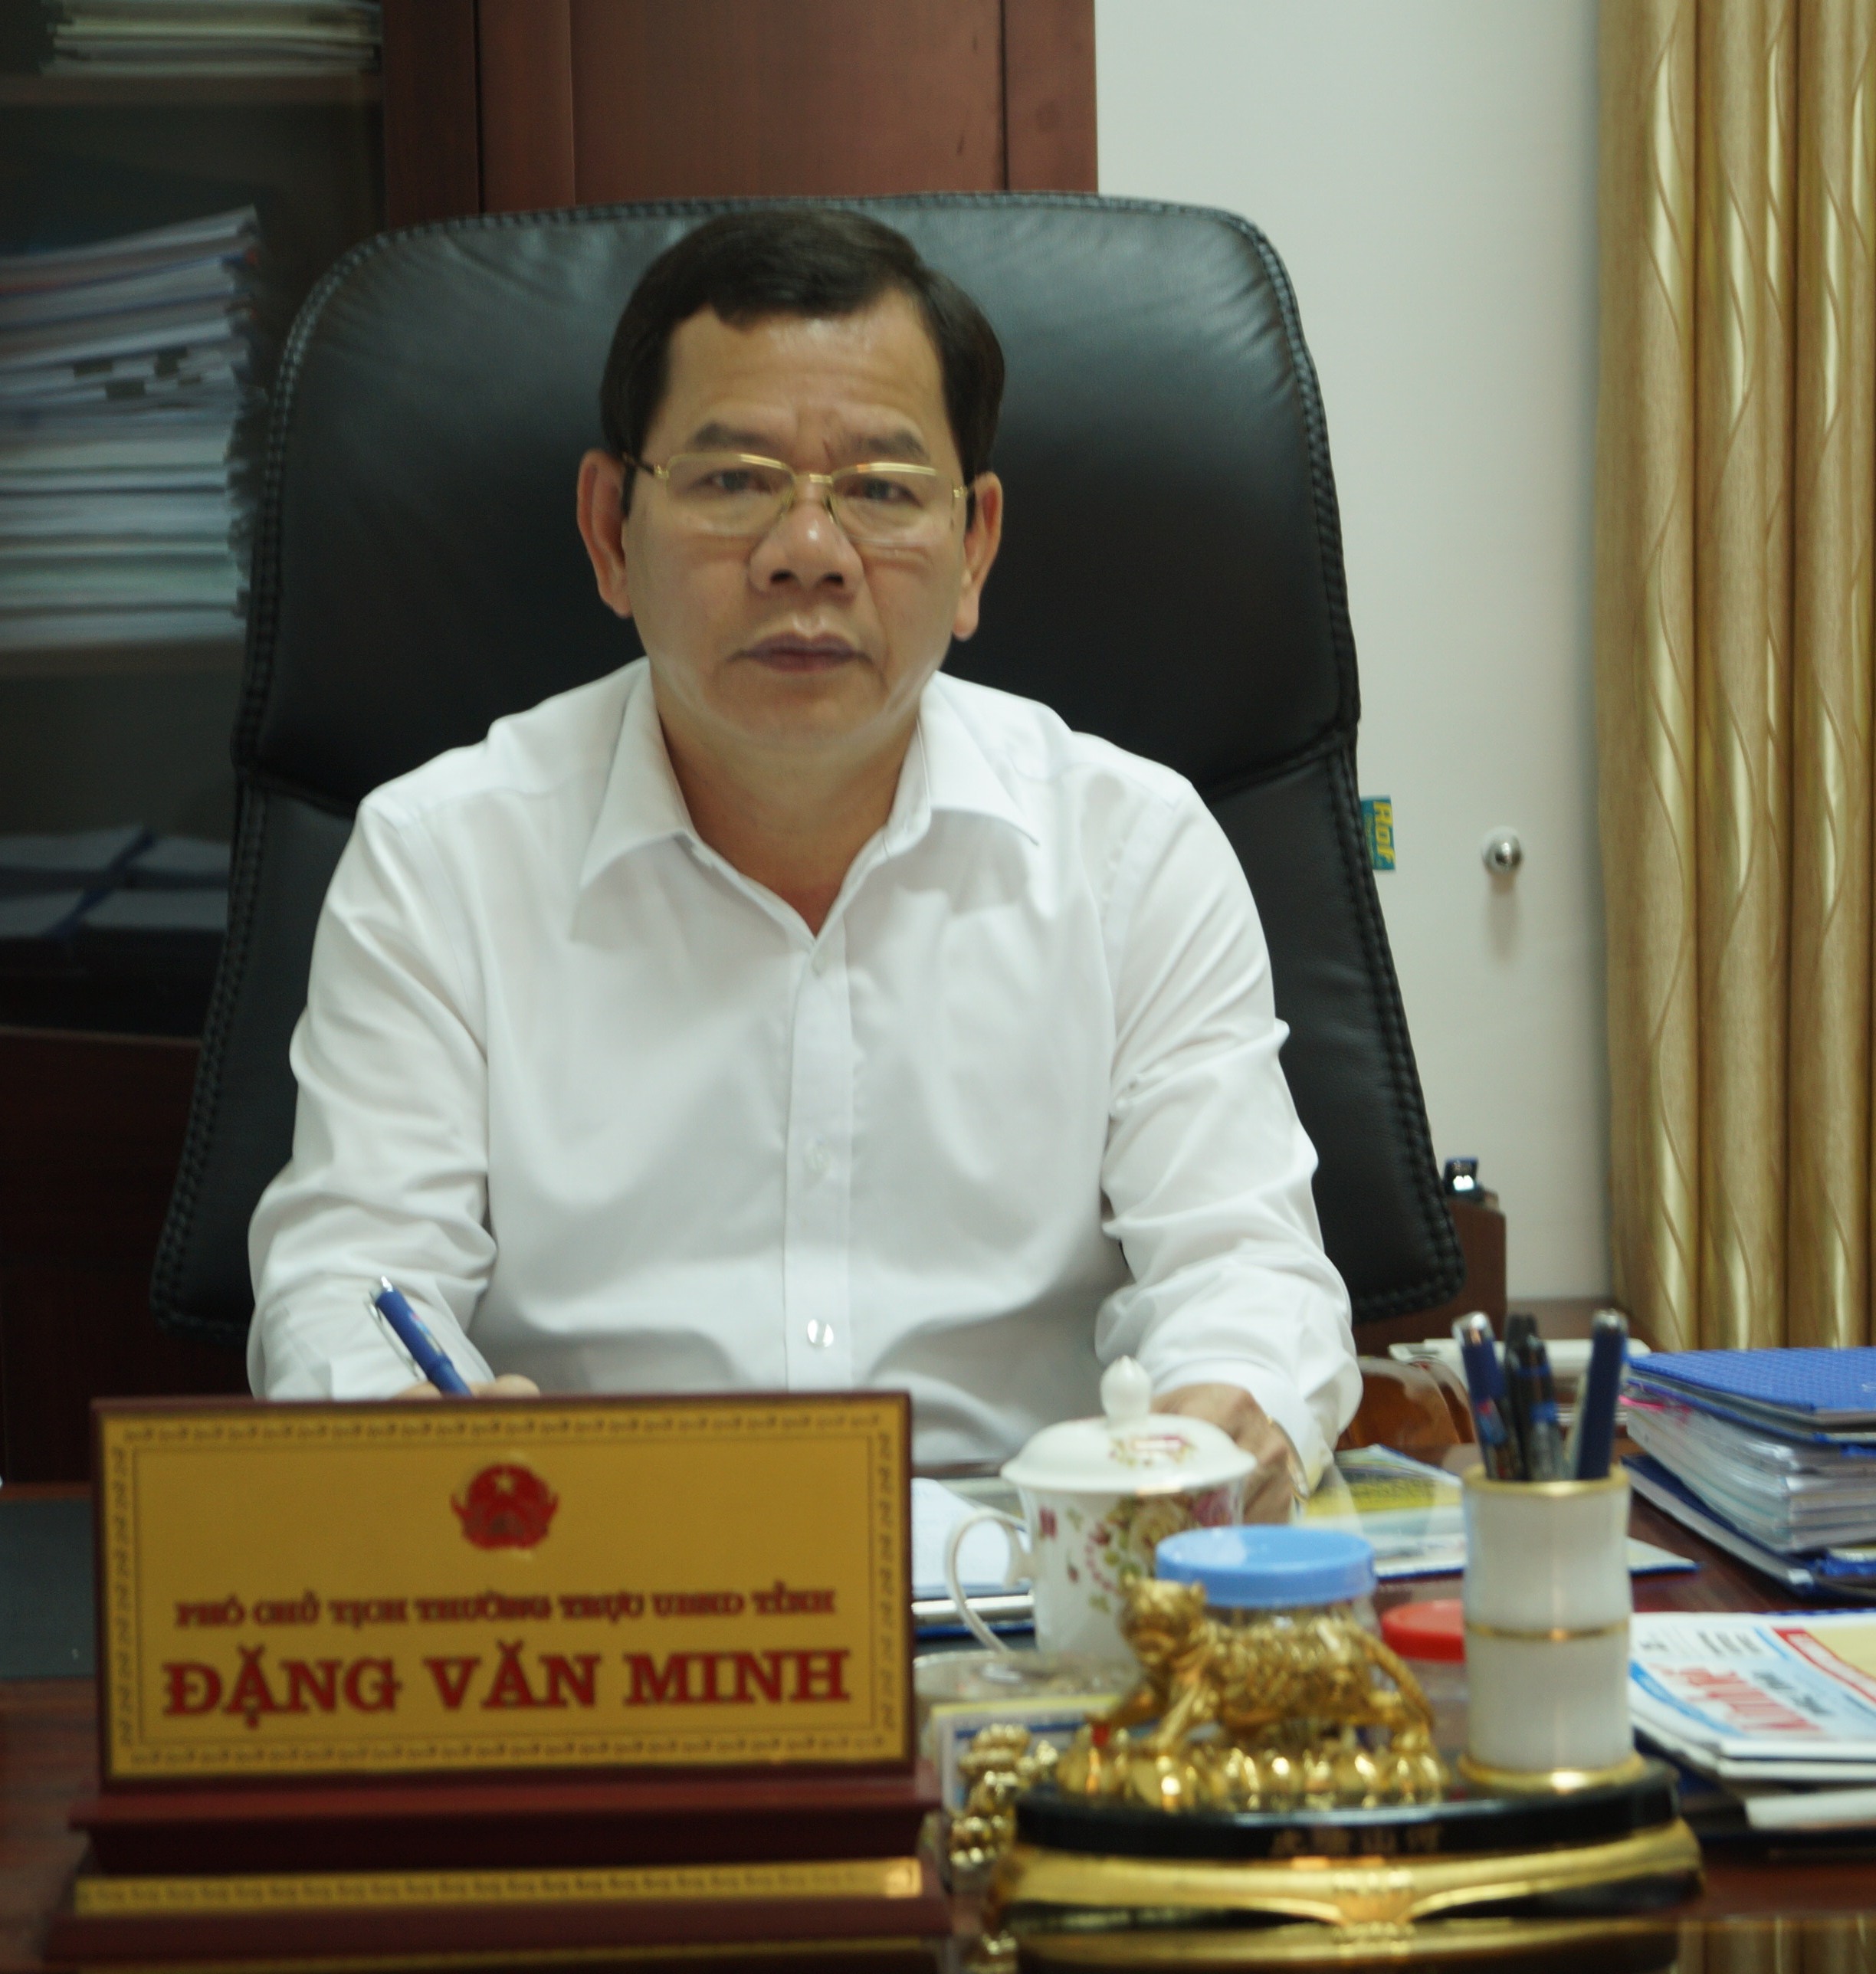 Ông Đặng Văn Minh được bầu giữ chức Phó Bí thư Tỉnh ủy Quảng Ngãi nhiệm kỳ 2015 - 2020